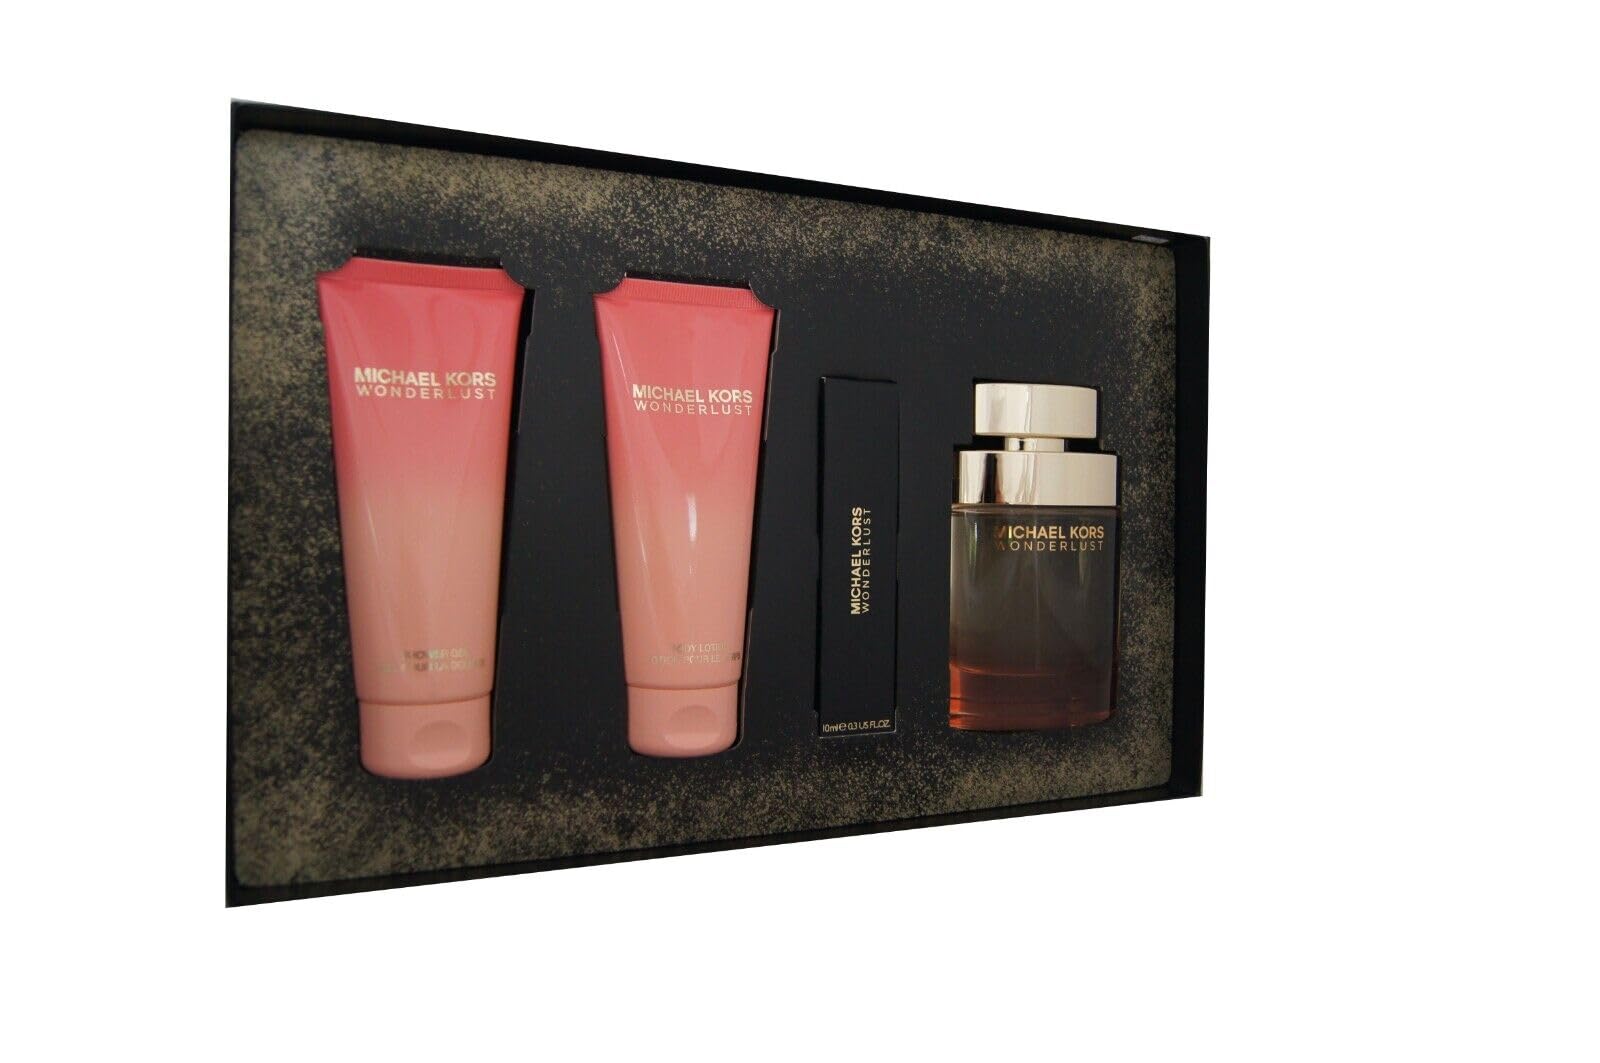 Michael Kors Wonderlust Perfume Gift Set for Women